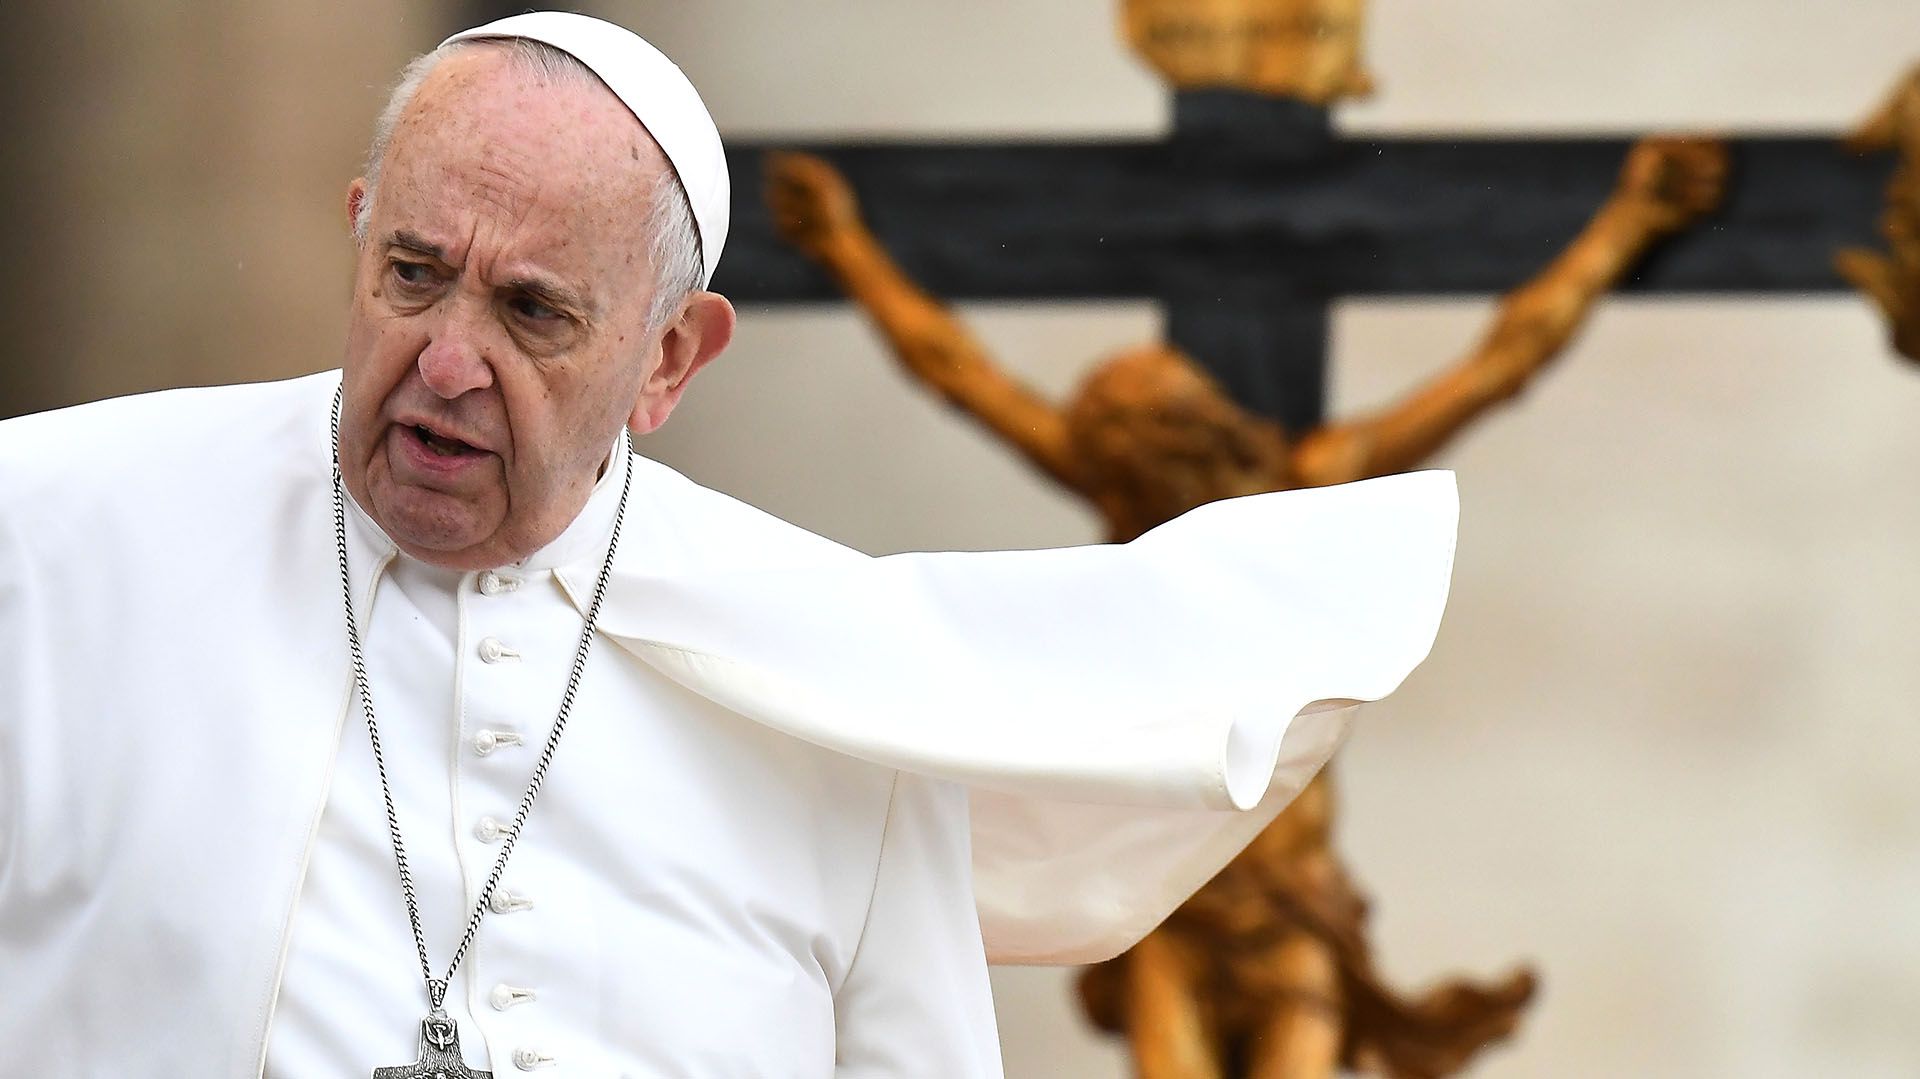 El Papa Francisco en el Vaticano (Photo by Vincenzo PINTO / AFP)